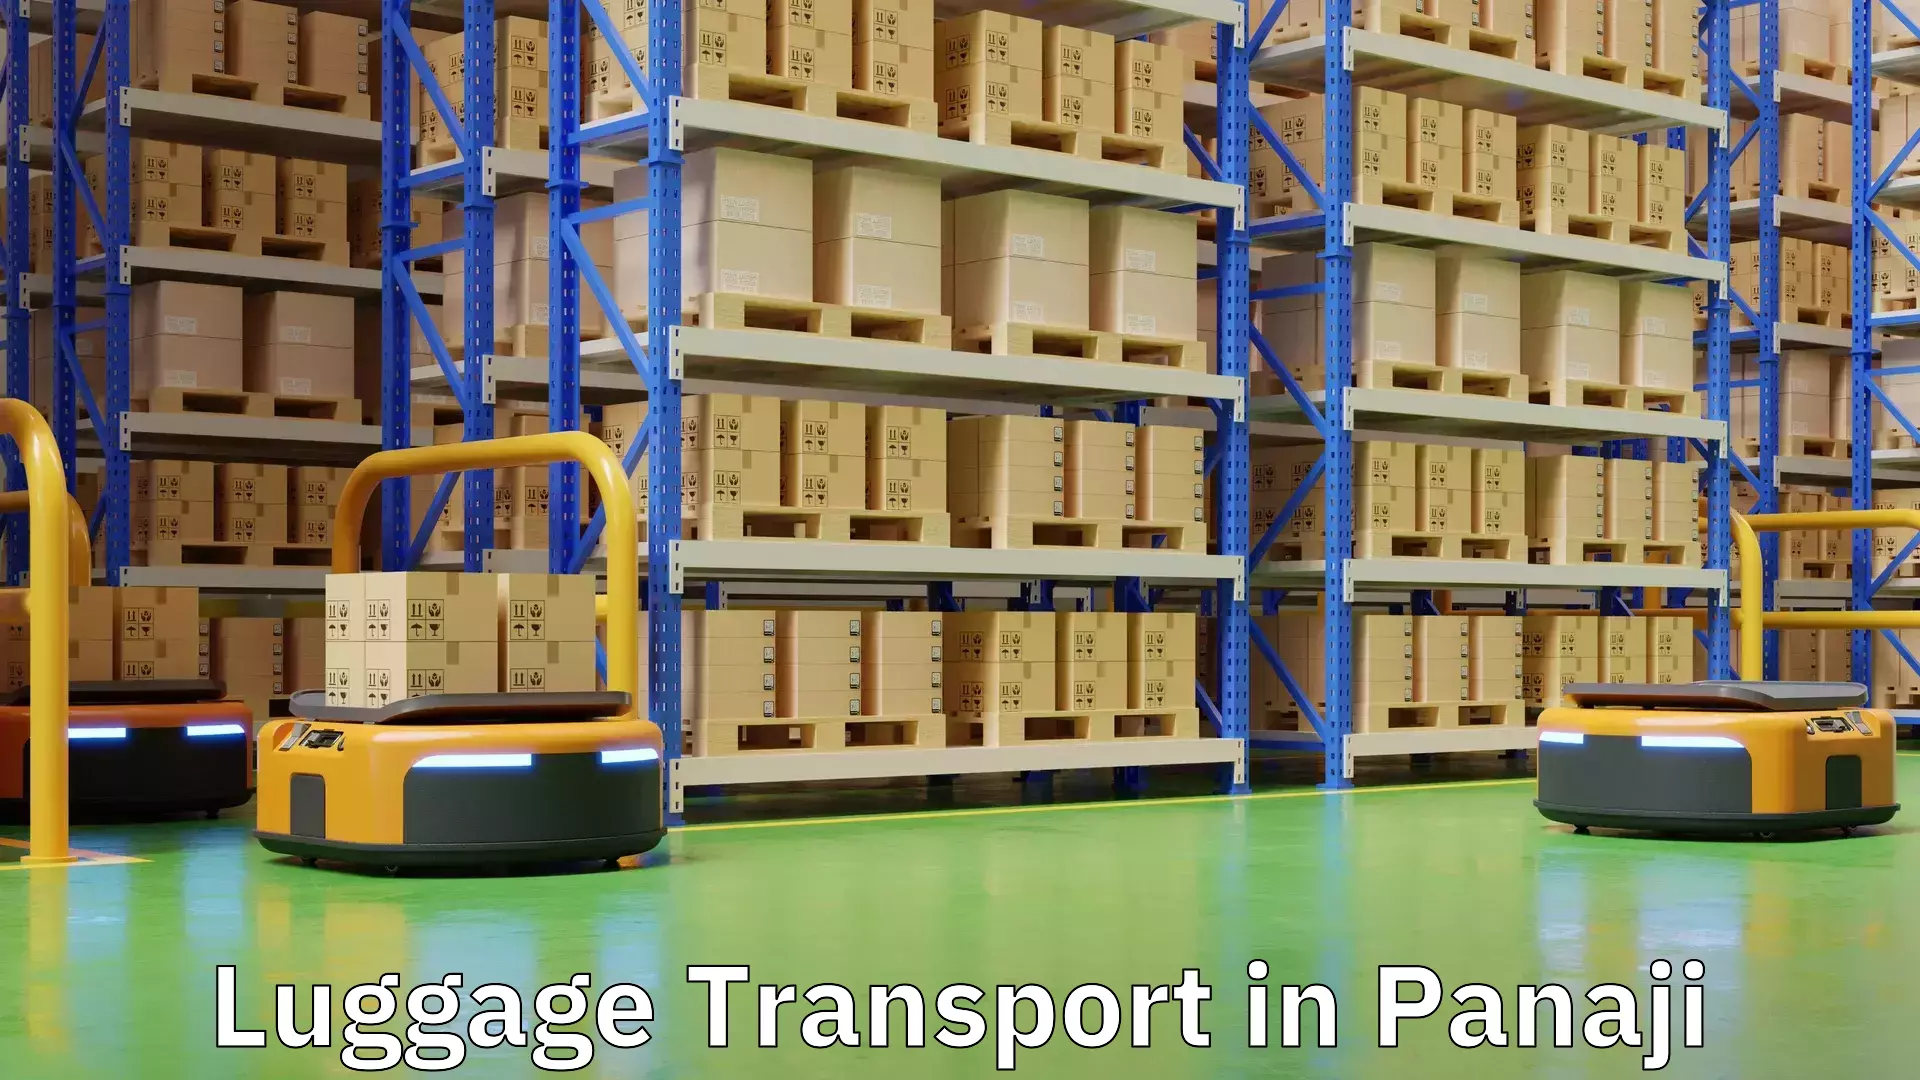 Corporate baggage transport in Panaji